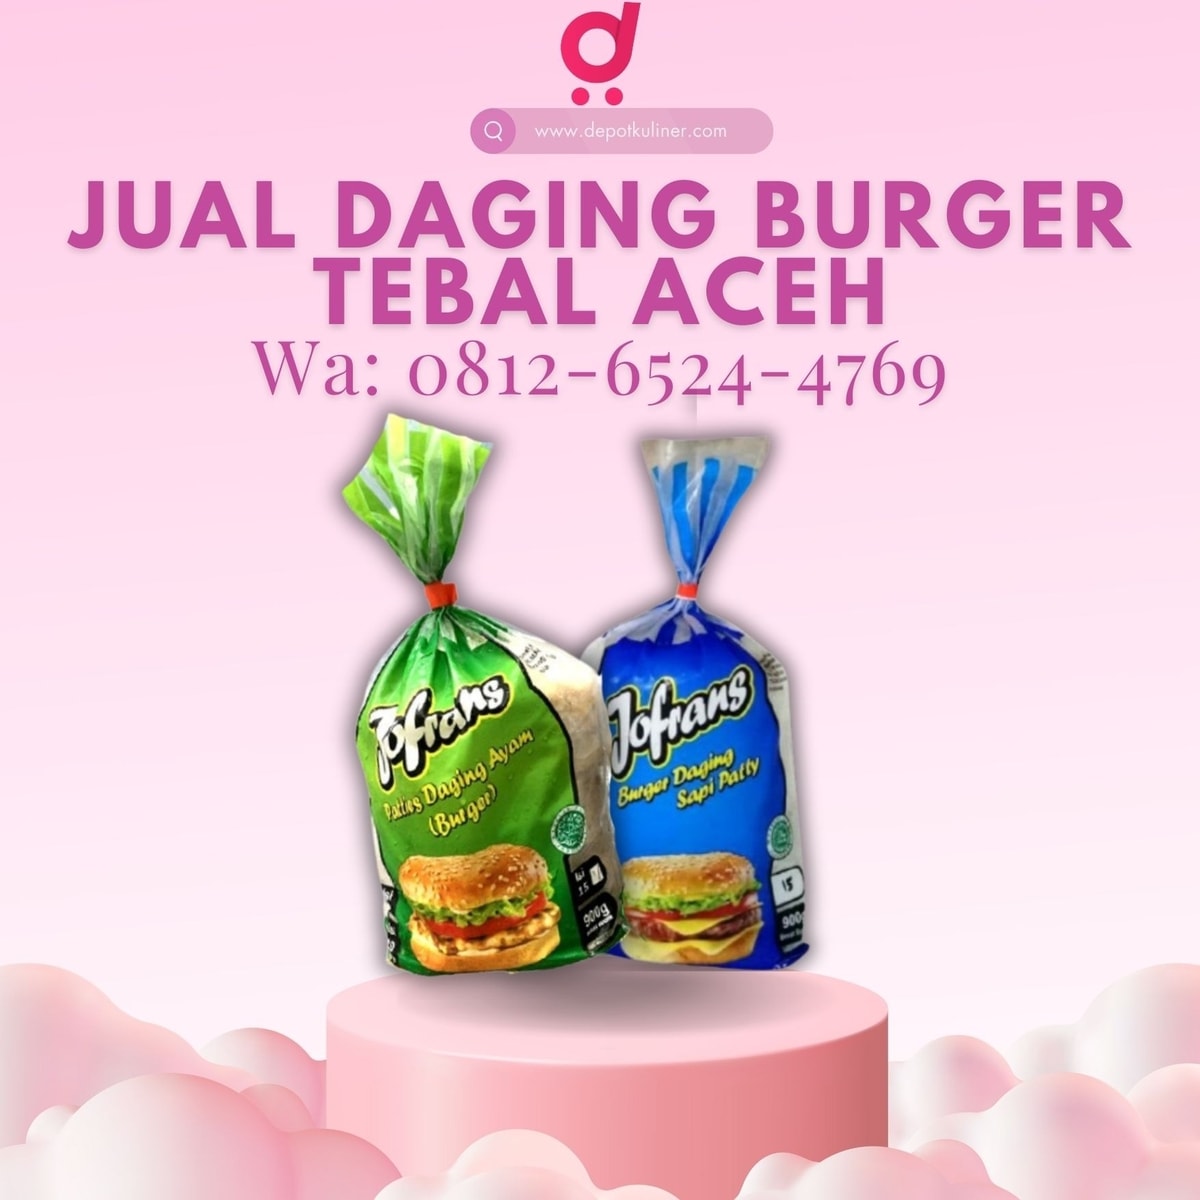 BANTING HARGA, Call 0812-6524-4769, Jual Daging Burger Tebal Aceh